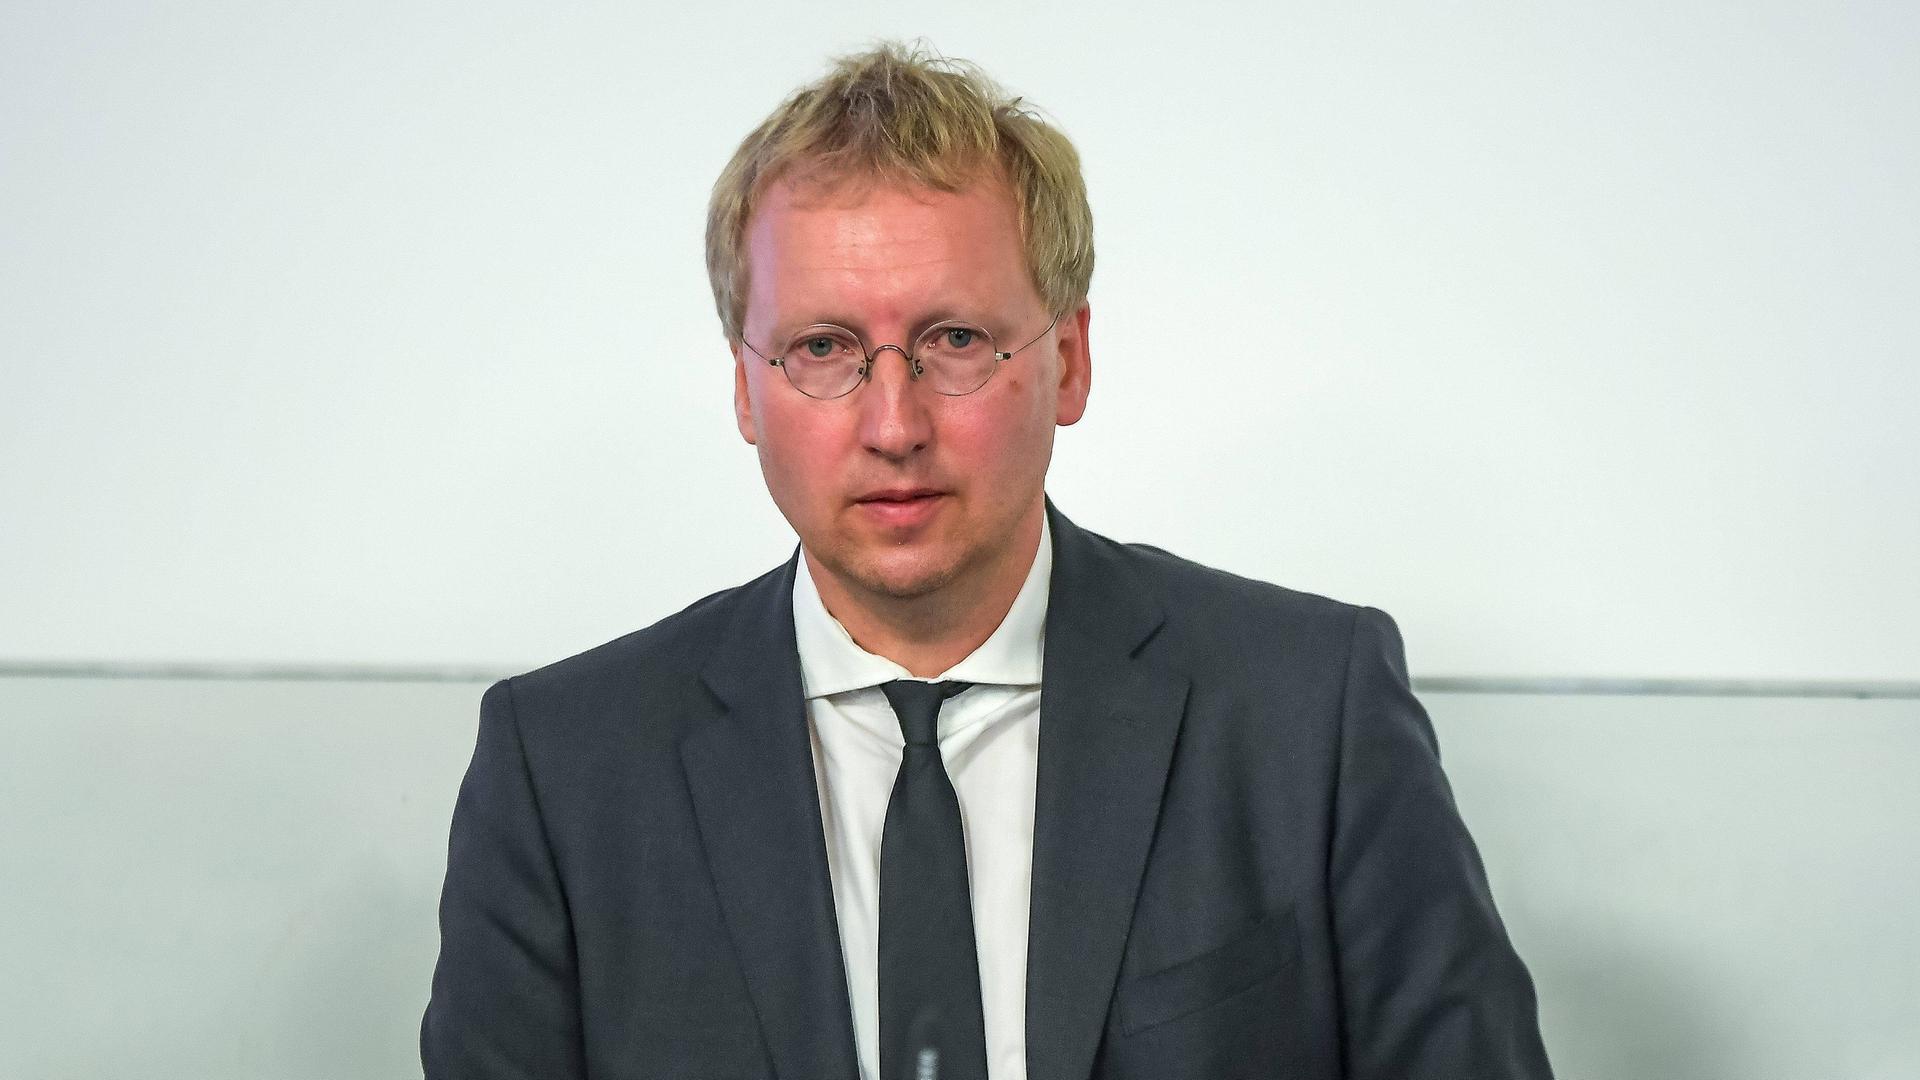 Johannes Varwick, Lehrstuhl für Internationale Beziehungen und europäische Politik an der Martin-Luther-Universität Halle-Wittenberg